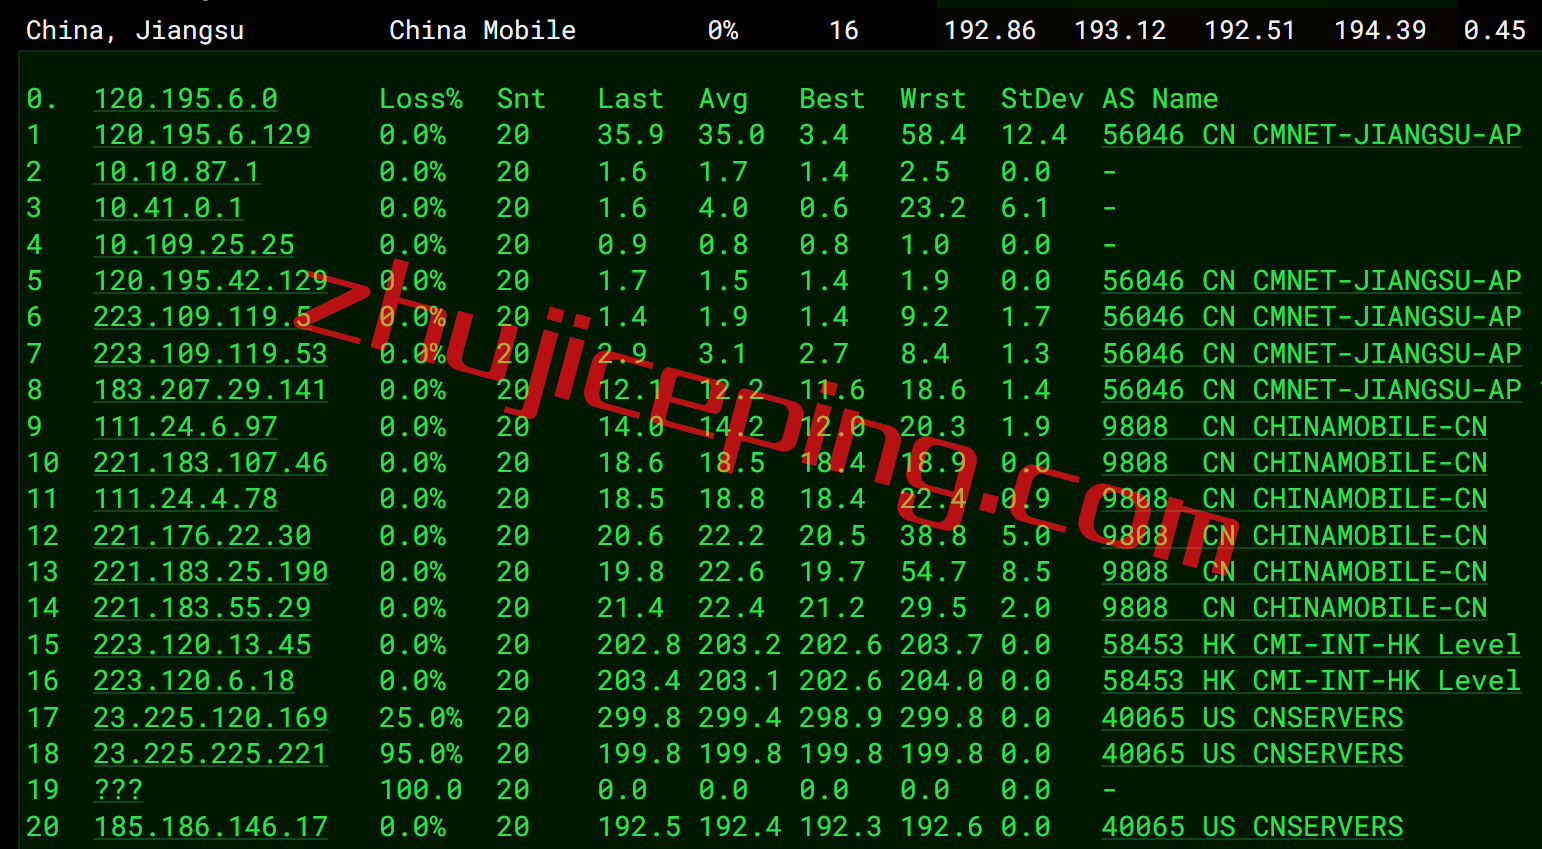 简单测评下hostdare新款美国cn2 gia网络+NVMe SSD系列的VPS